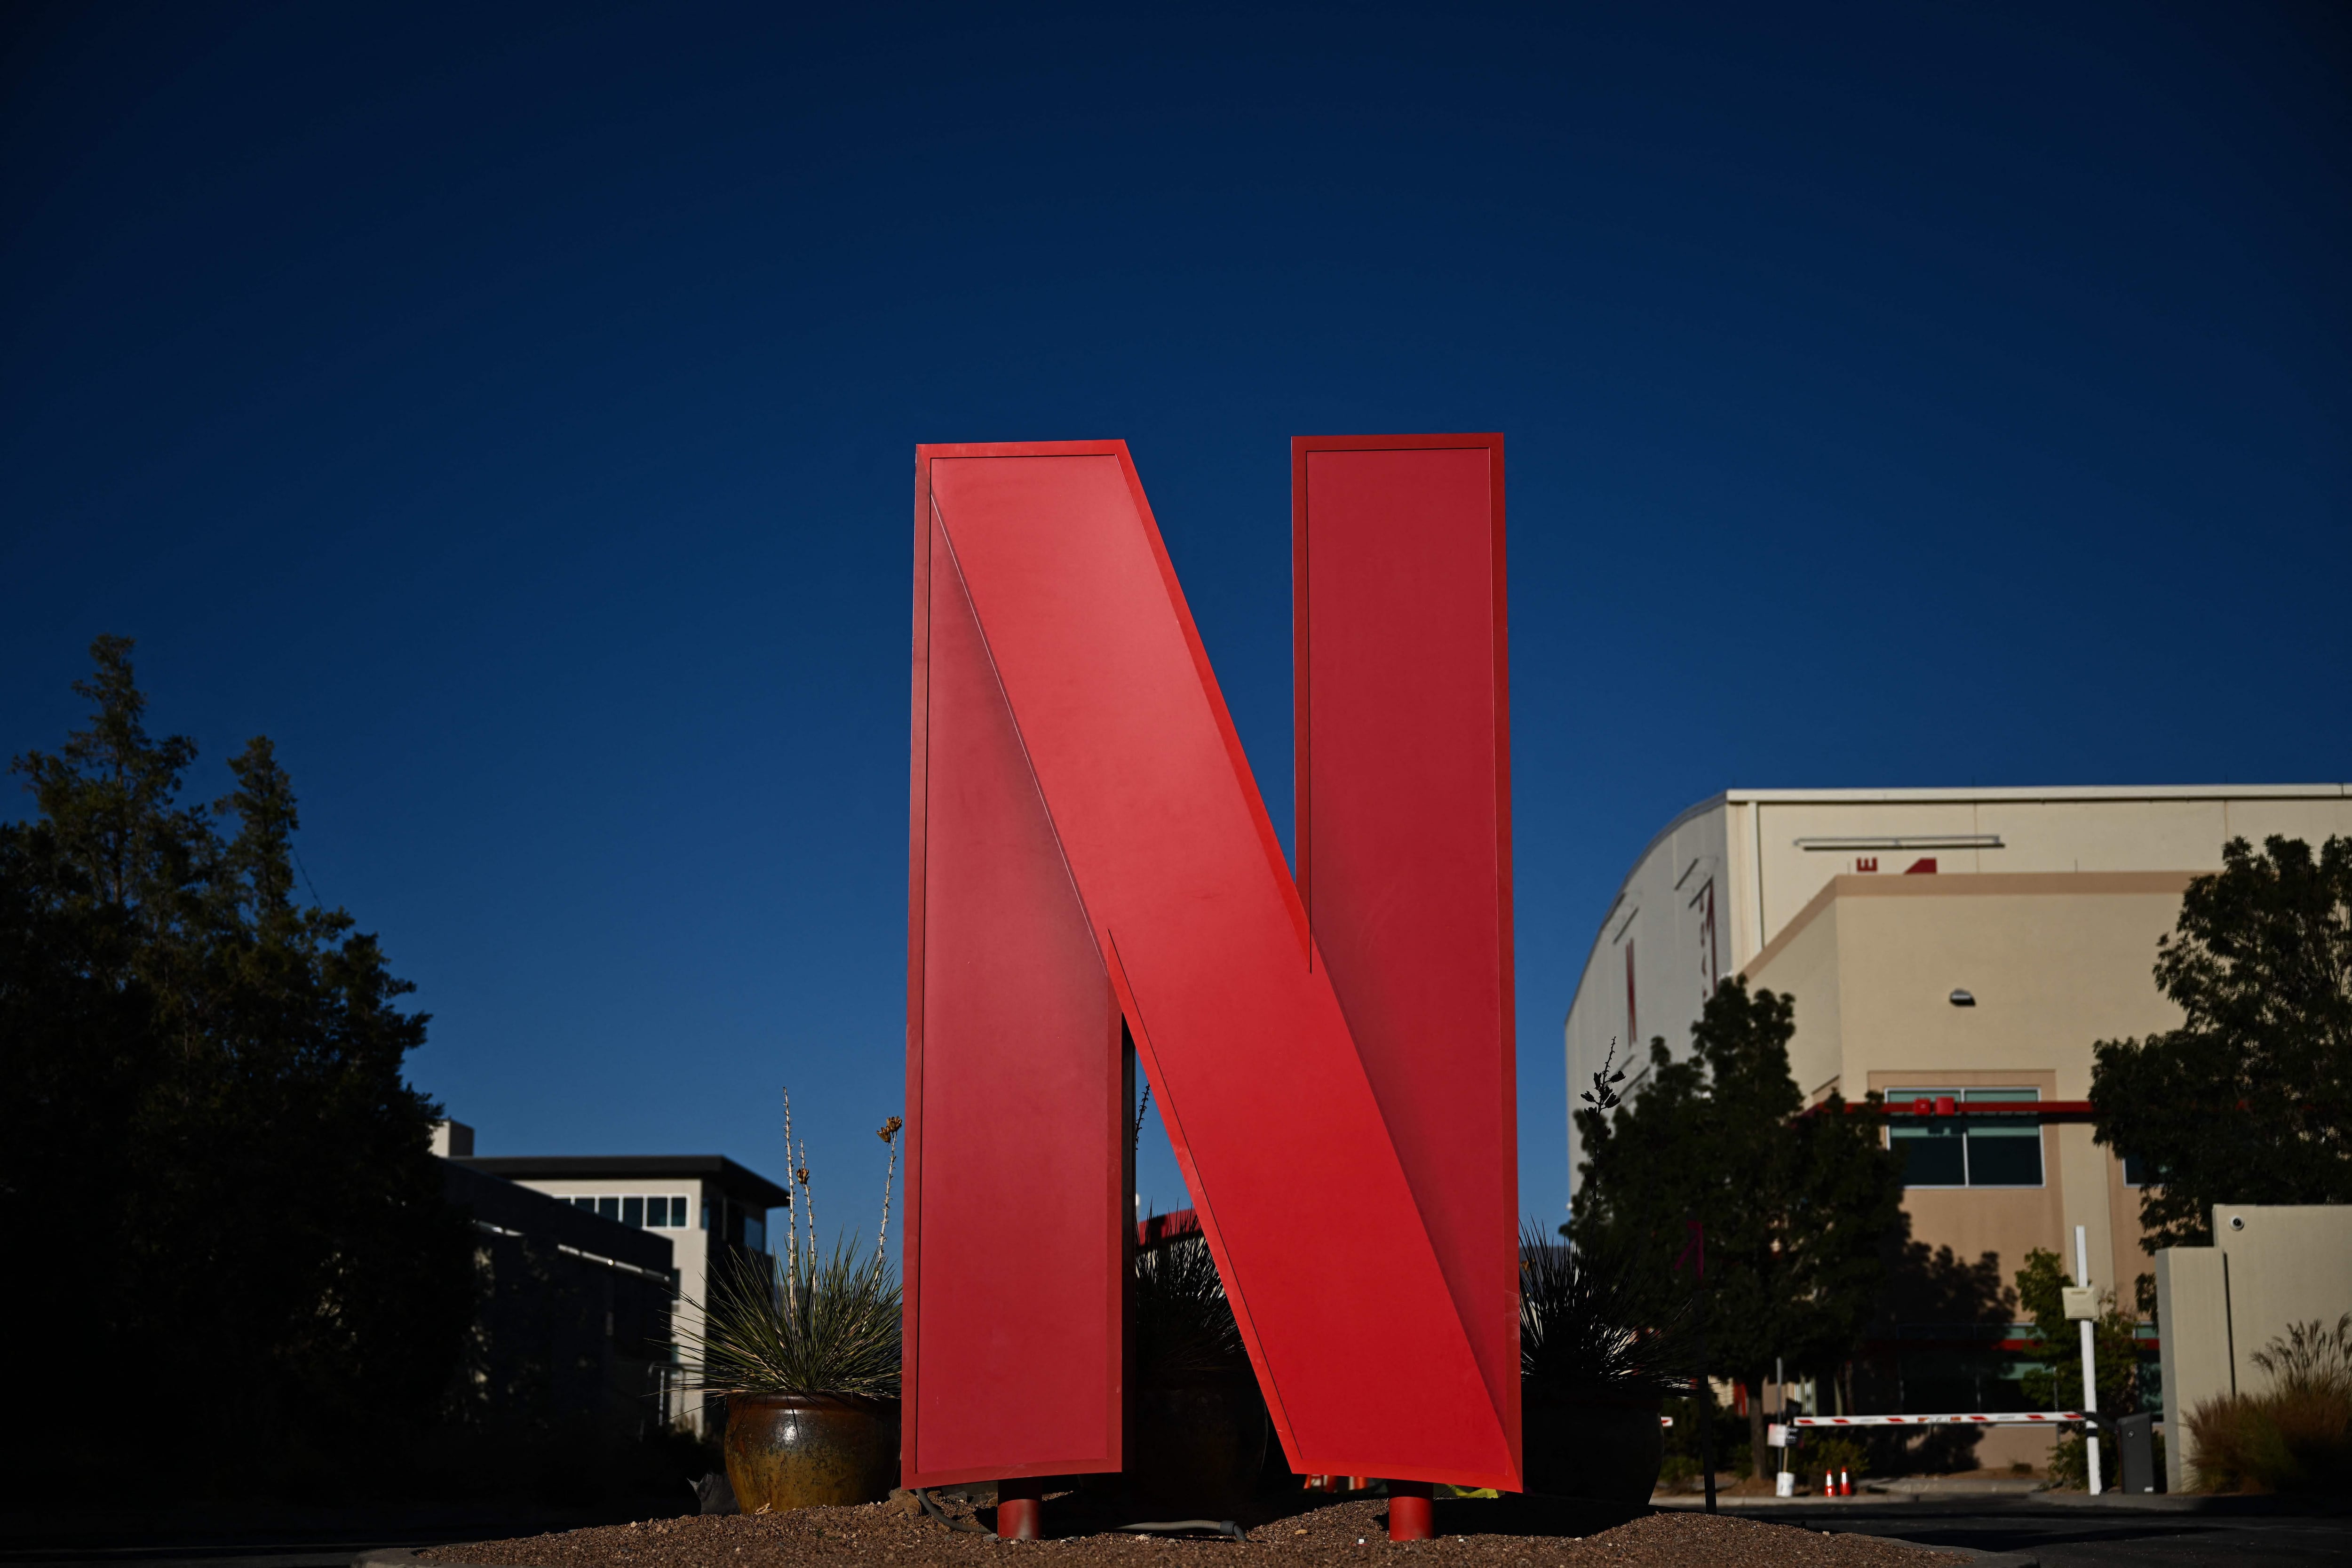 Netflix aumenta preços nos EUA e encerra plano básico no Brasil, Negócios